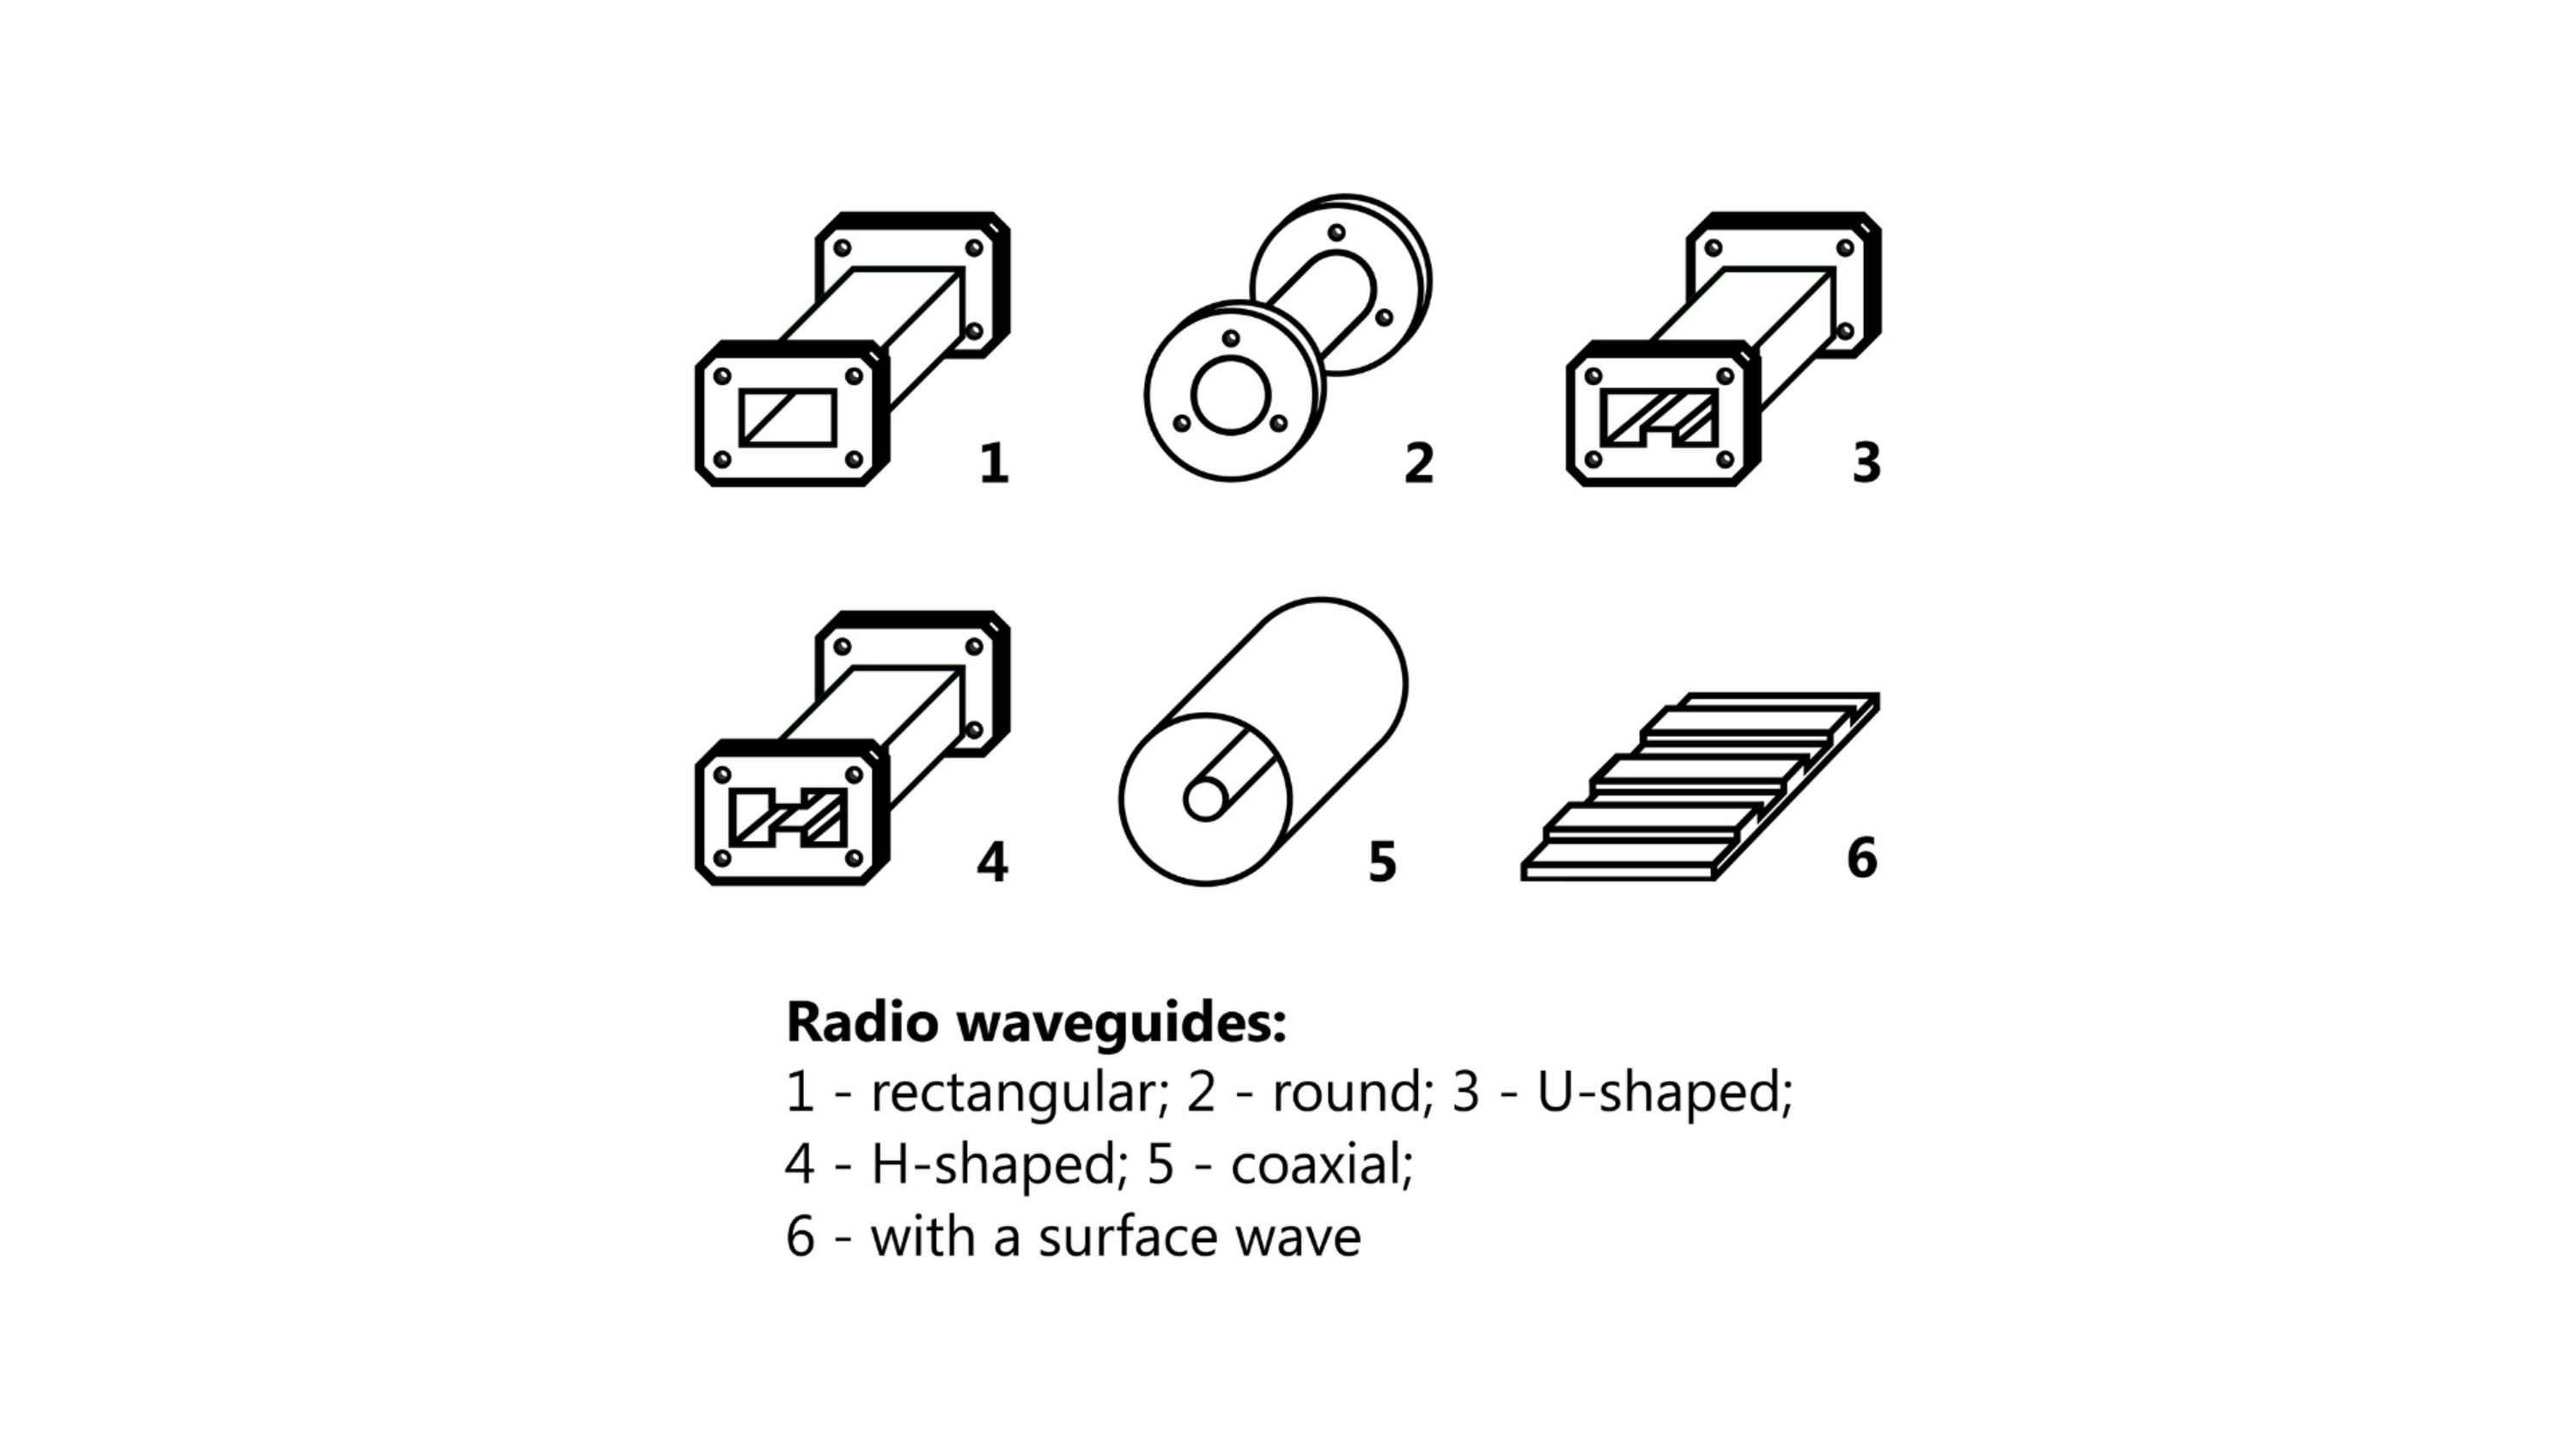 Zeichnung 6 versch. Hohlleiter. Text: 1. rechteckig, 2. rund, 3. u-förmig, 4. H-förmig, 5. coaxial, 6. mit Oberflächenwelle